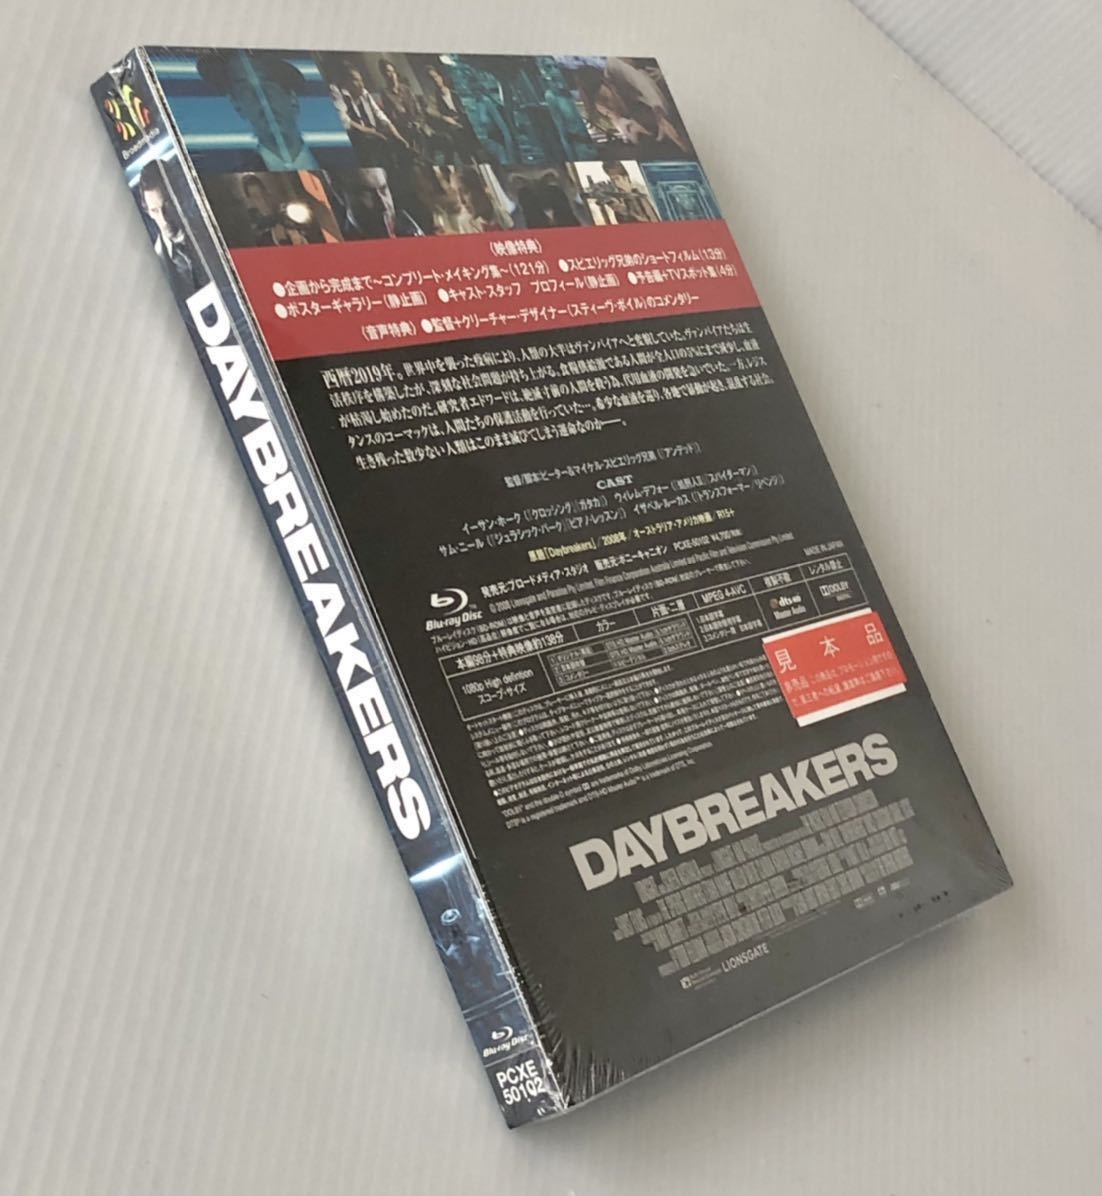 貴重 初回生産限定盤 Blu-ray「デイブレイカー」 特製スリーブケース付 